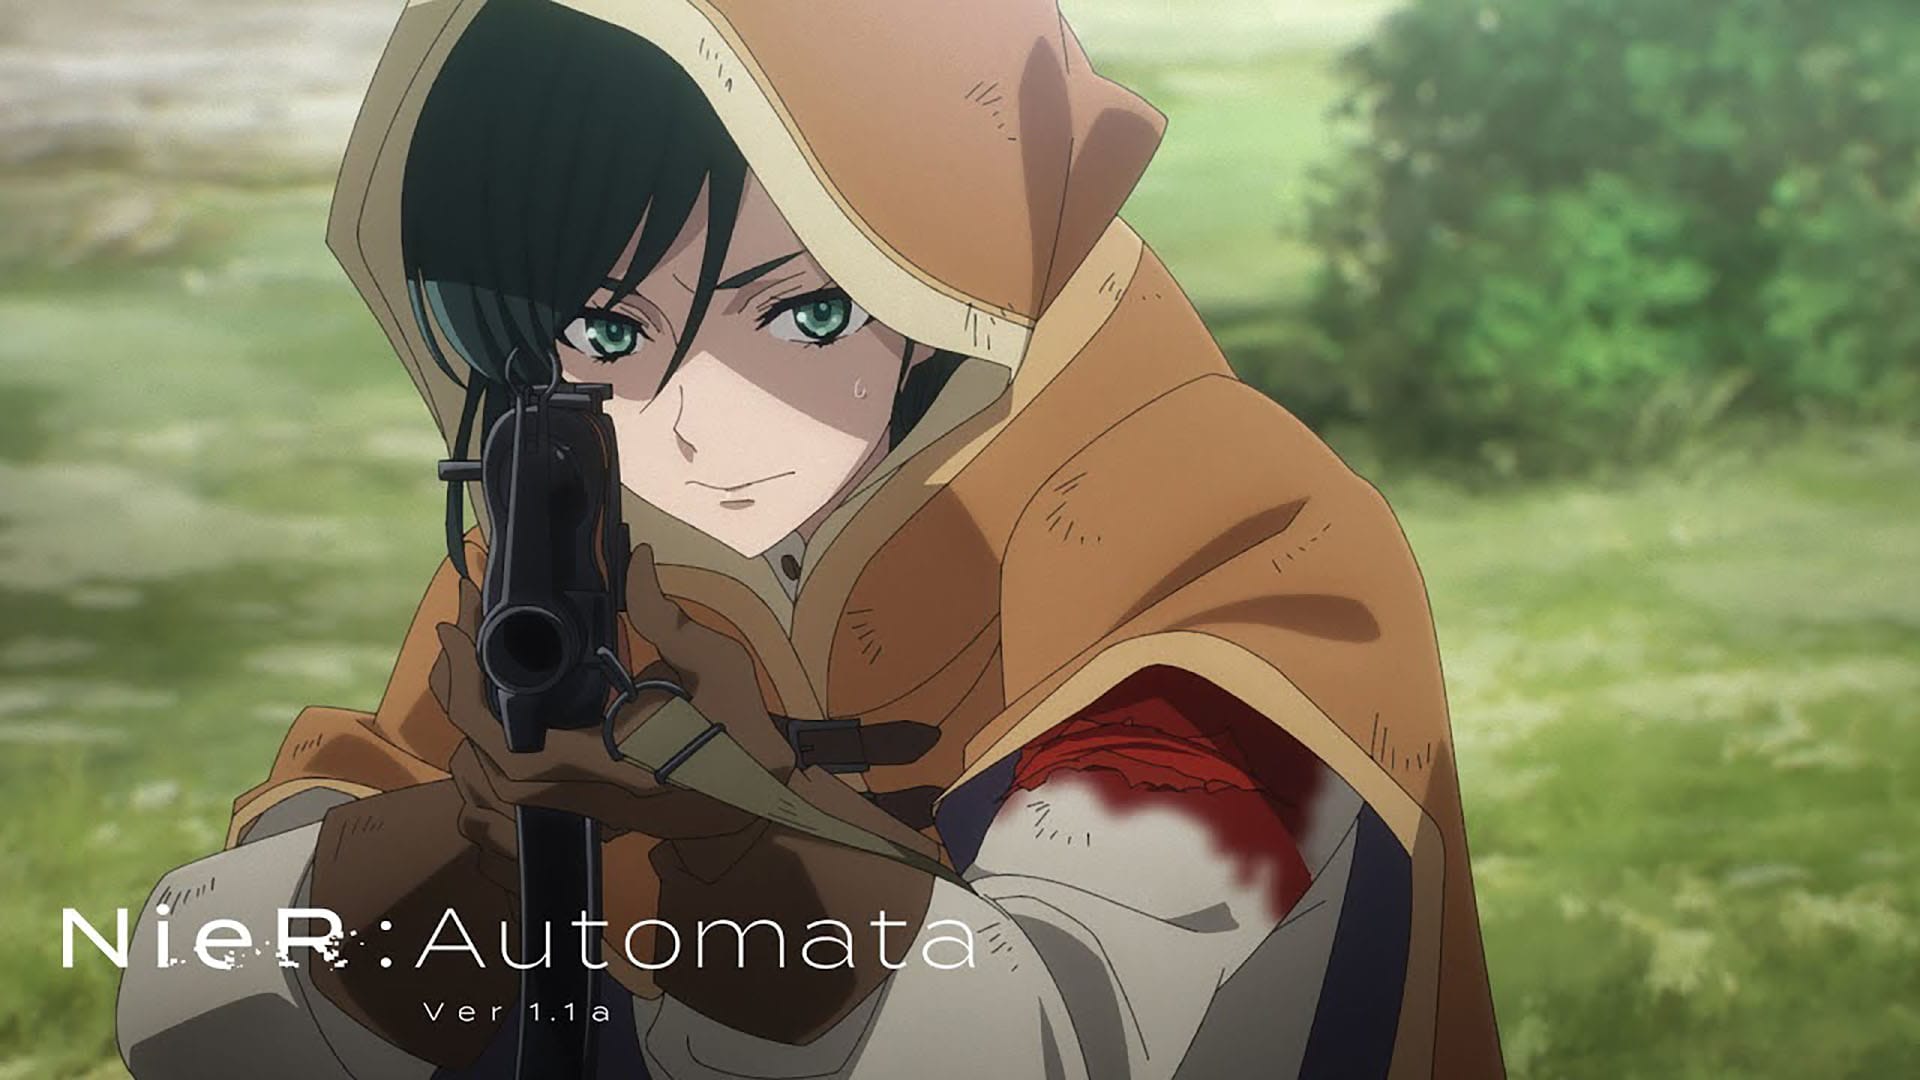 Episode 6 - NieR:Automata Ver 1.1a - Anime News Network